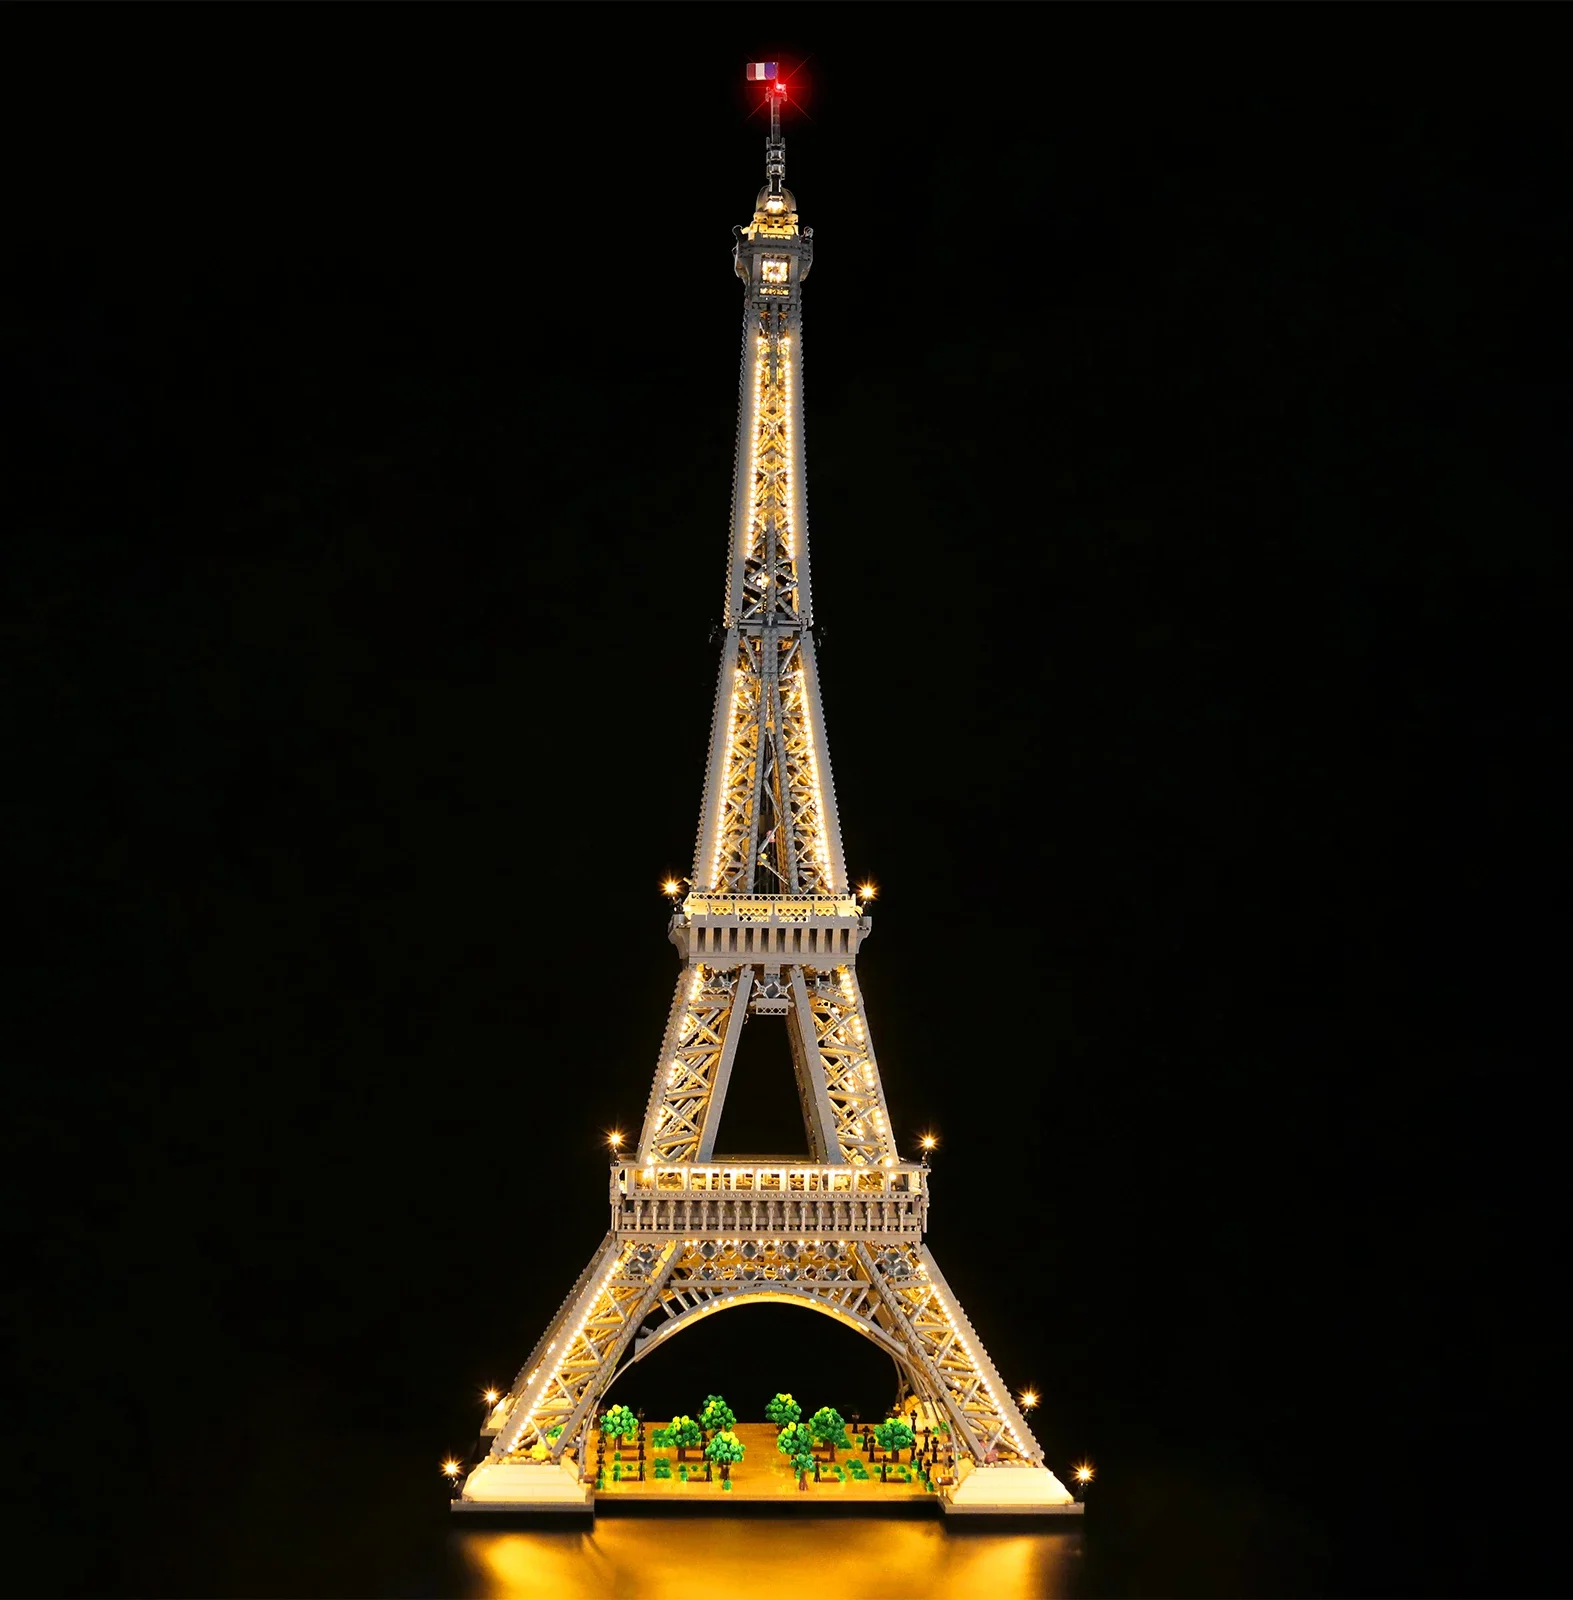 

2022 новые иконы 1,5 м высотная Эйфелева башня 10307 10001 шт. всемирно известная архитектура Парижа строительные блоки кирпичи игрушки для взрослых подарок